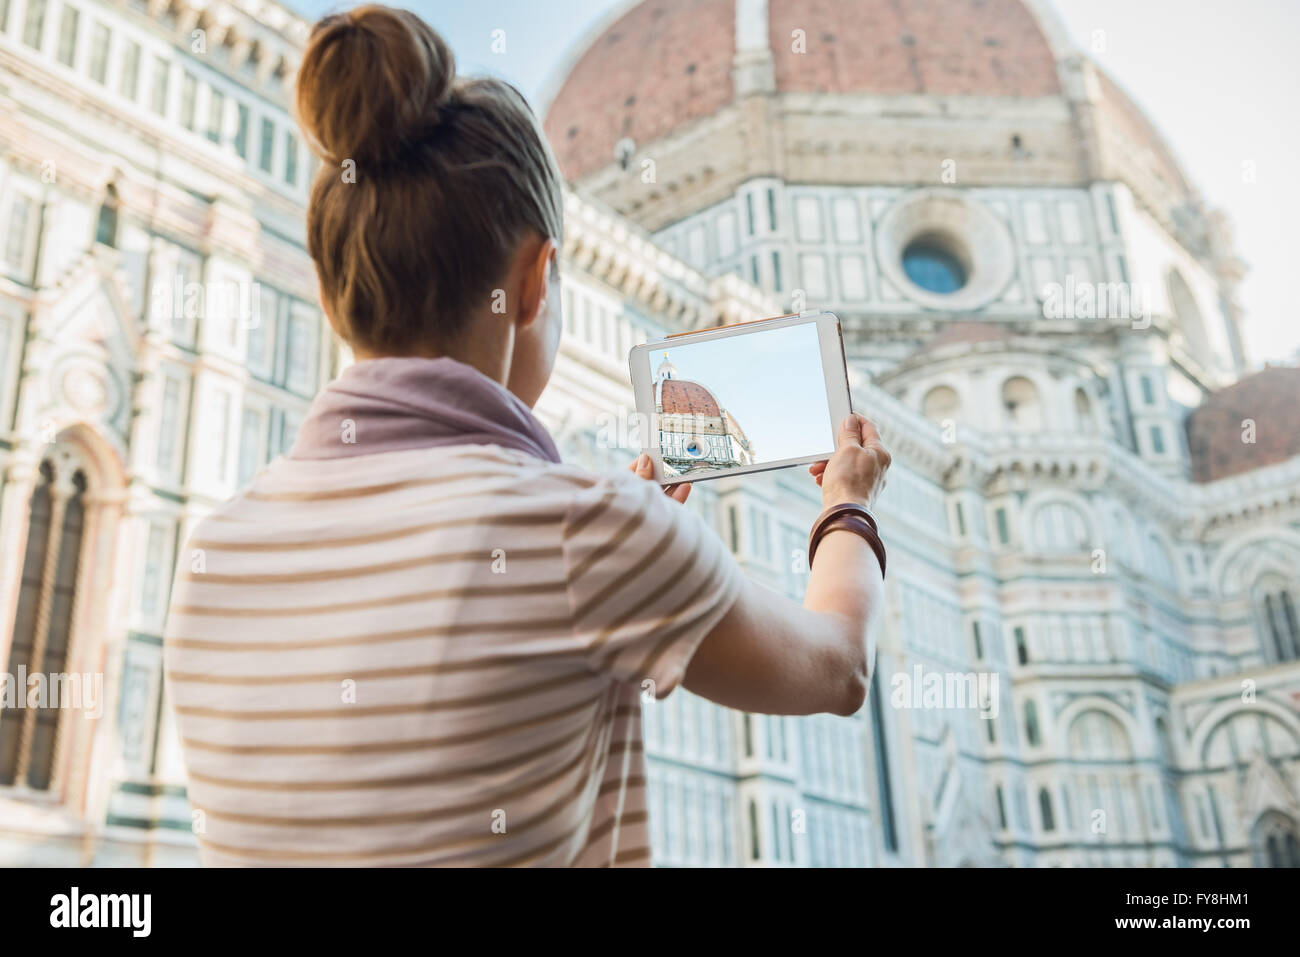 Ein Spaziergang rund um beeindruckende Dom in Florenz, Italien. Gesehen von hinten Frau touristischen sightseeing und Aufnahme mit einer Tabelle Stockfoto